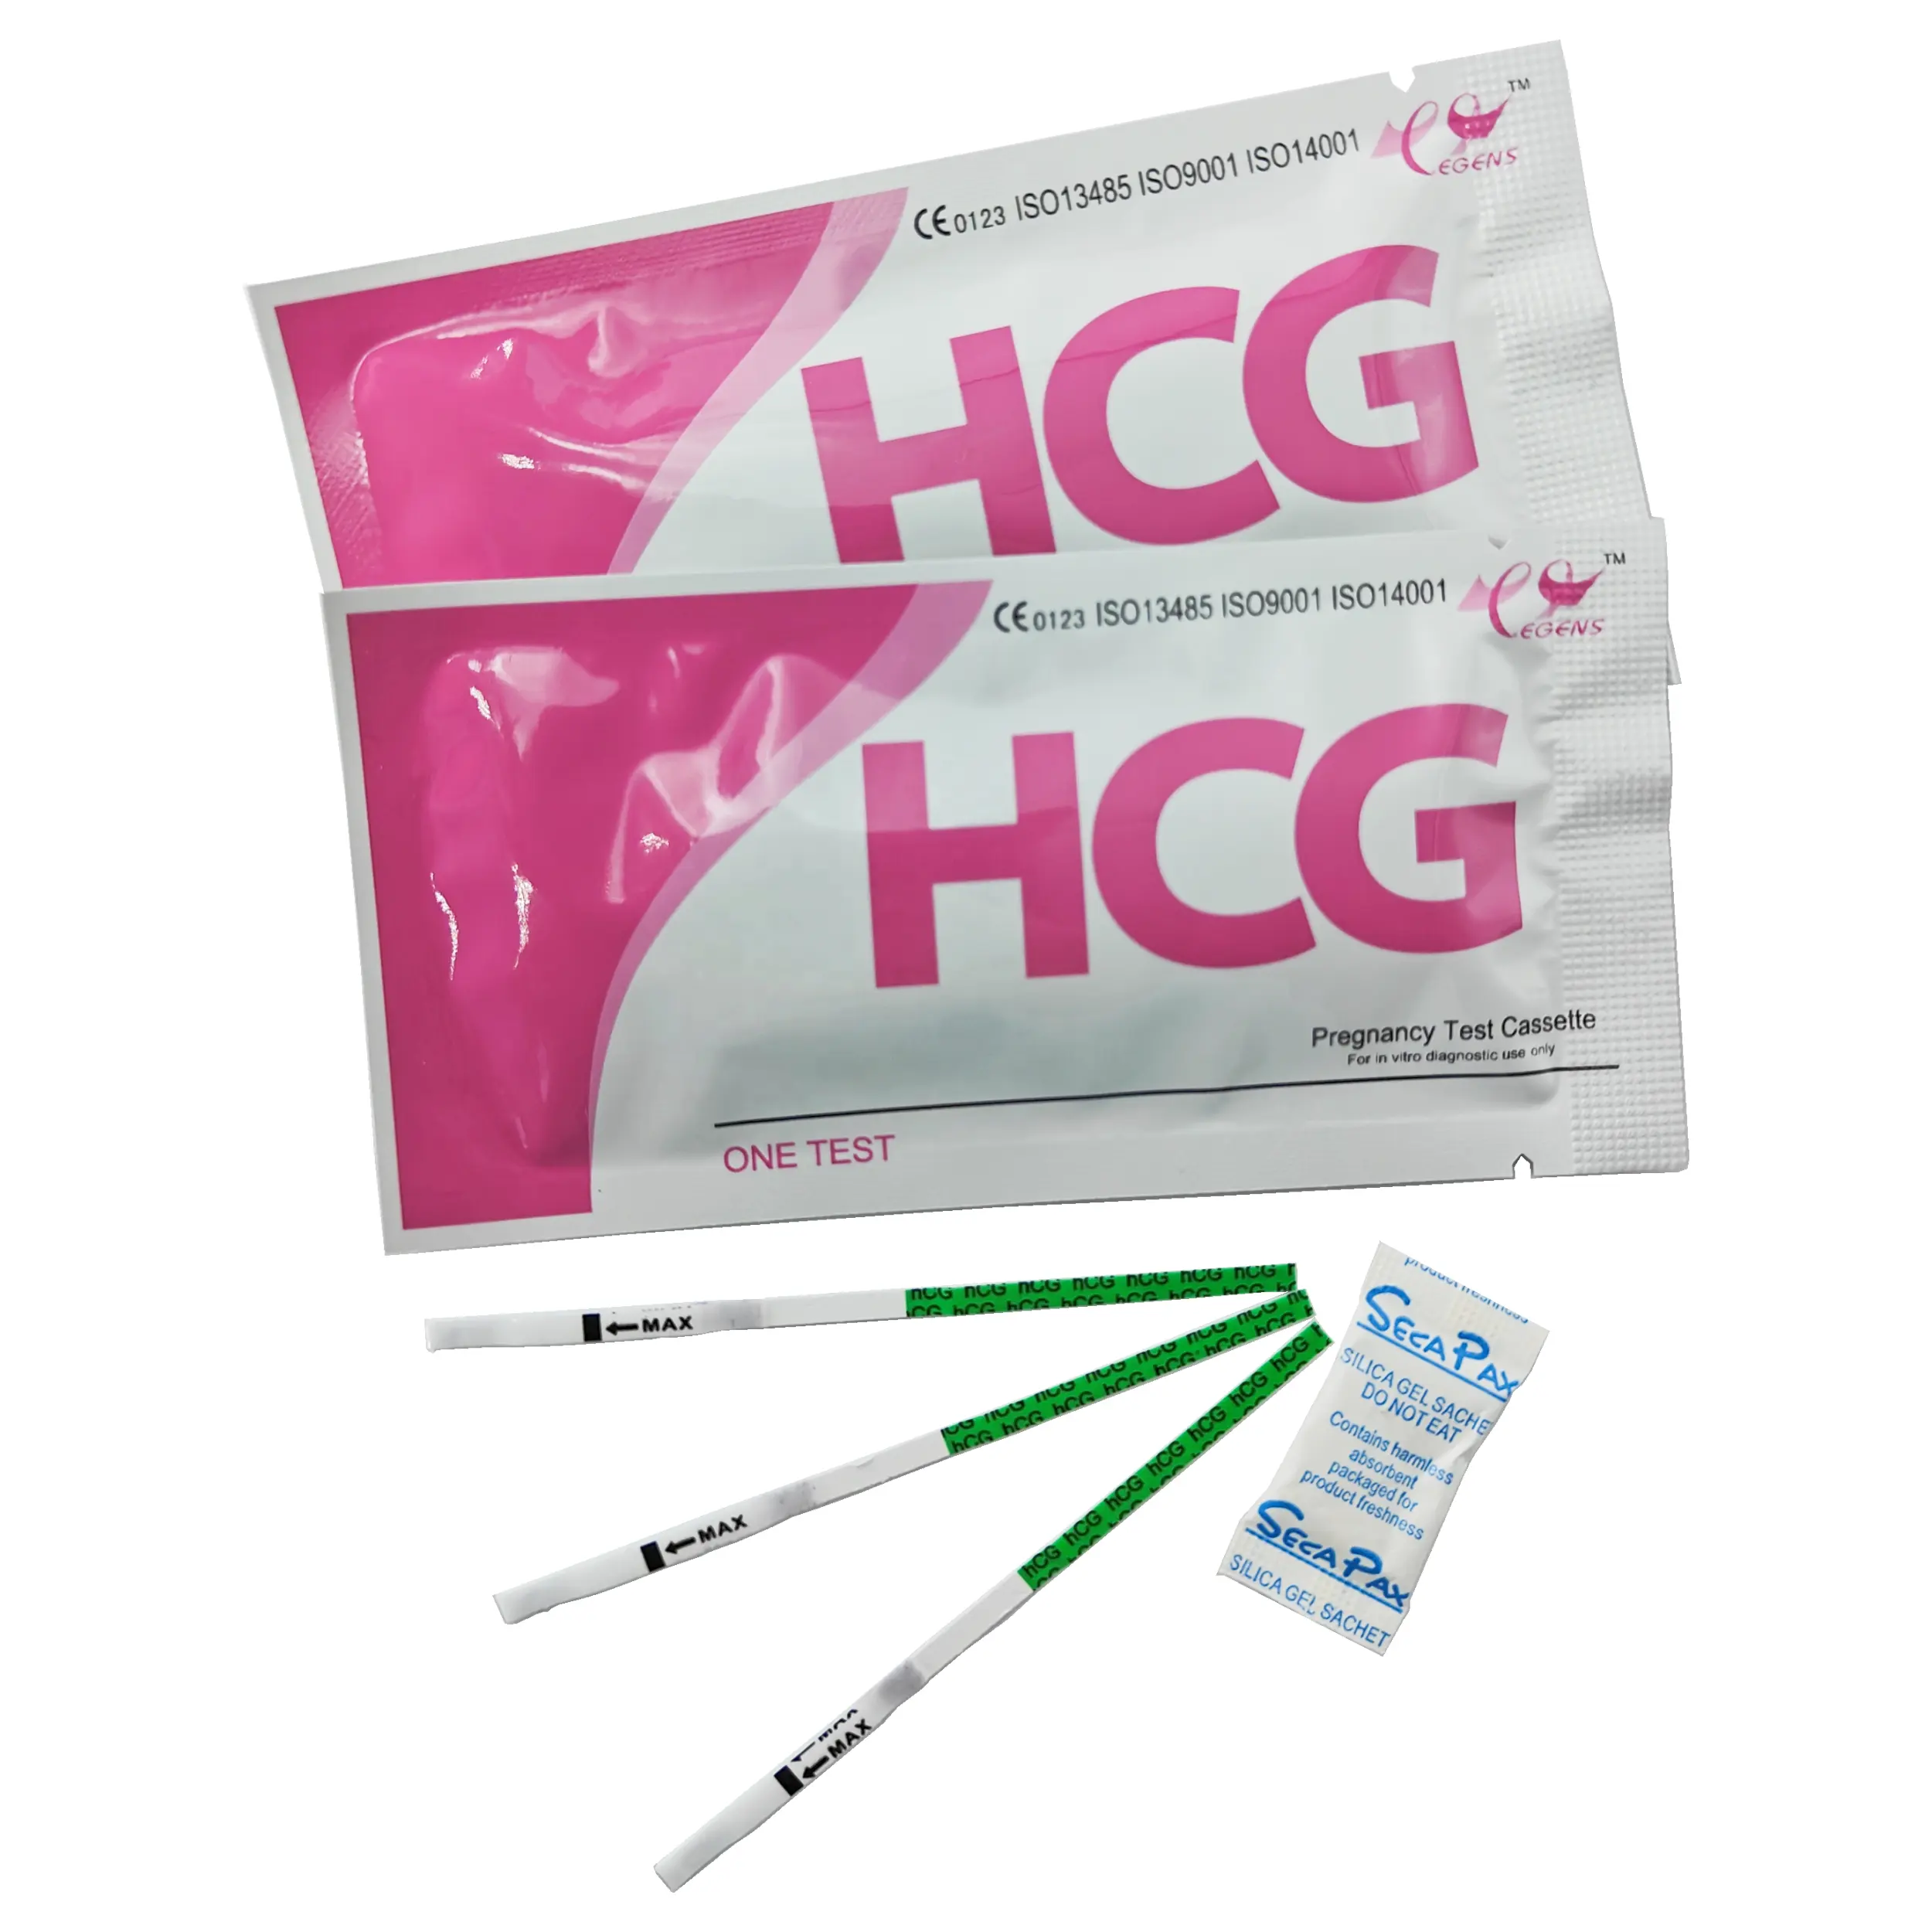 Teste da gravidez (hcg)